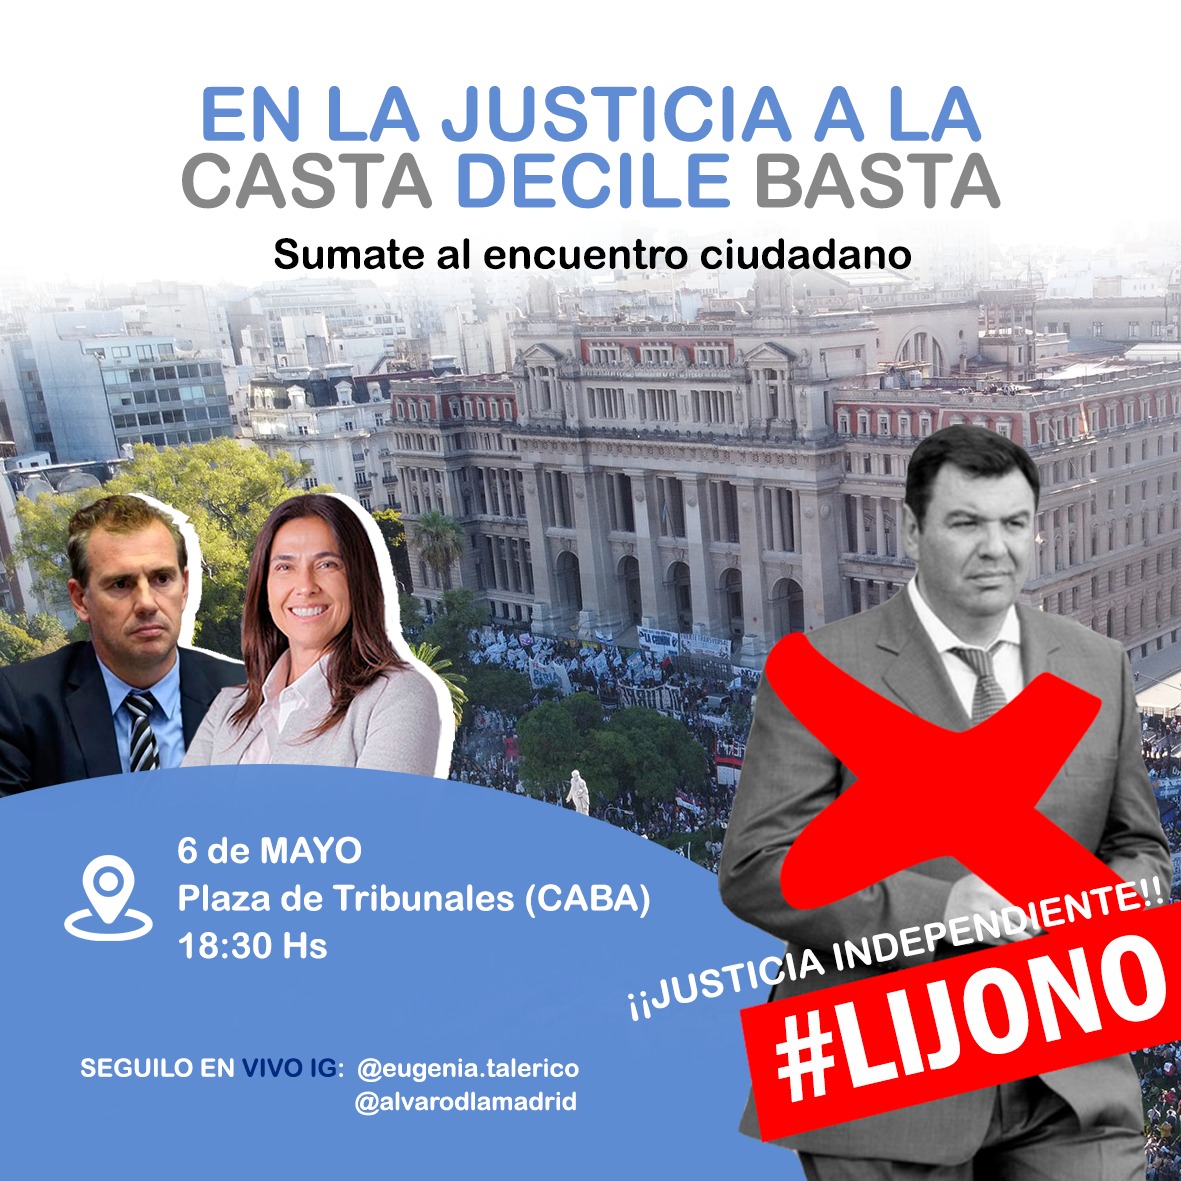 👉 Lunes 6 de Mayo, 18.30 horas Plaza Tribunales. Encuentro Ciudadano por la Justicia: En la justicia a la Casta decile basta. #LijoNo #JusticiaIndependiente No podés faltar !!!